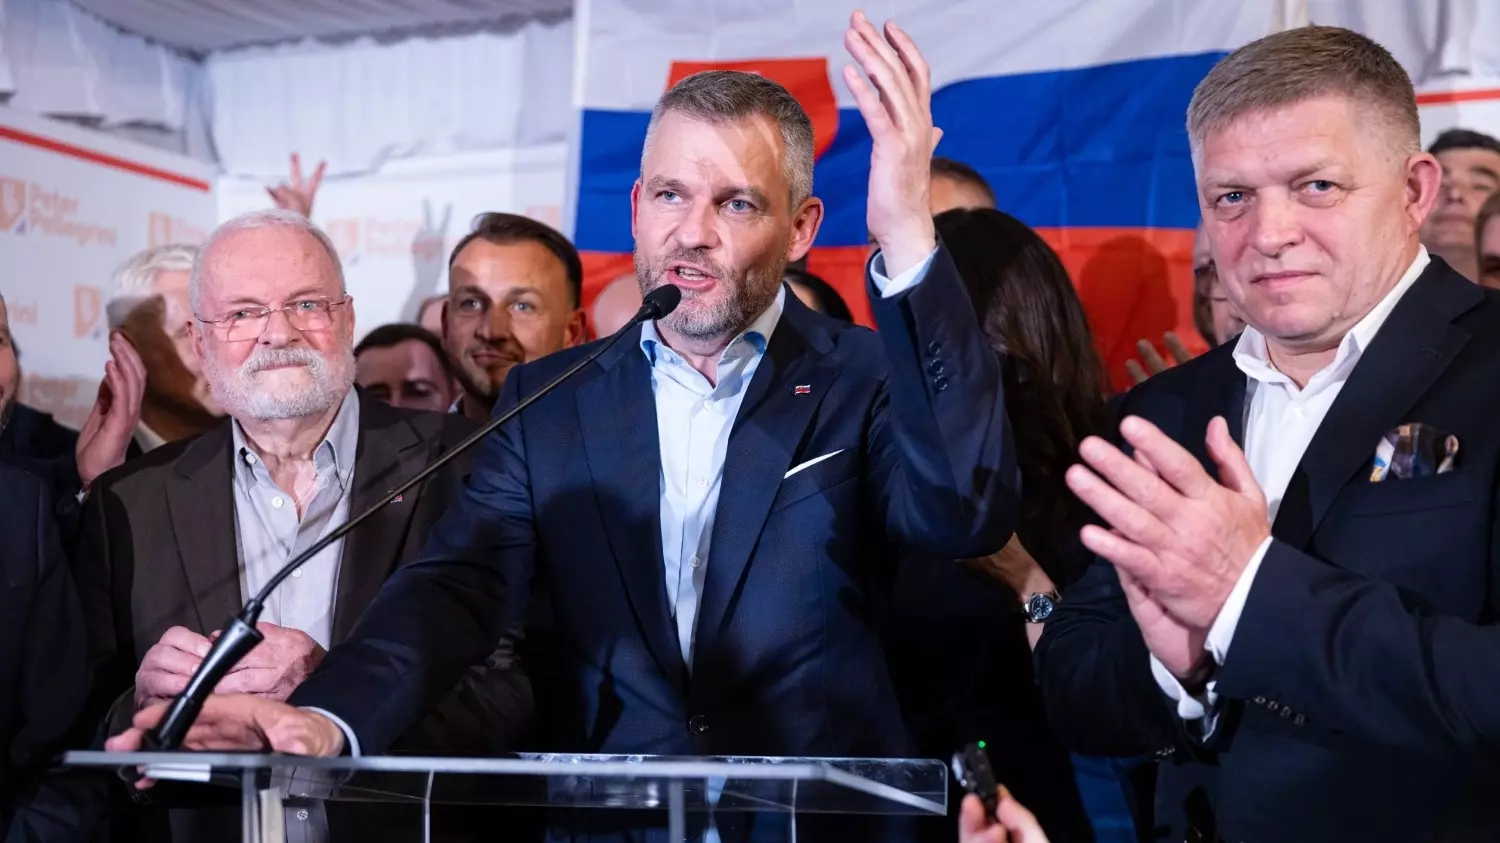 Сторонник пророссийского курса победил на выборах президента Словакии, набрав 53,12% голосов.